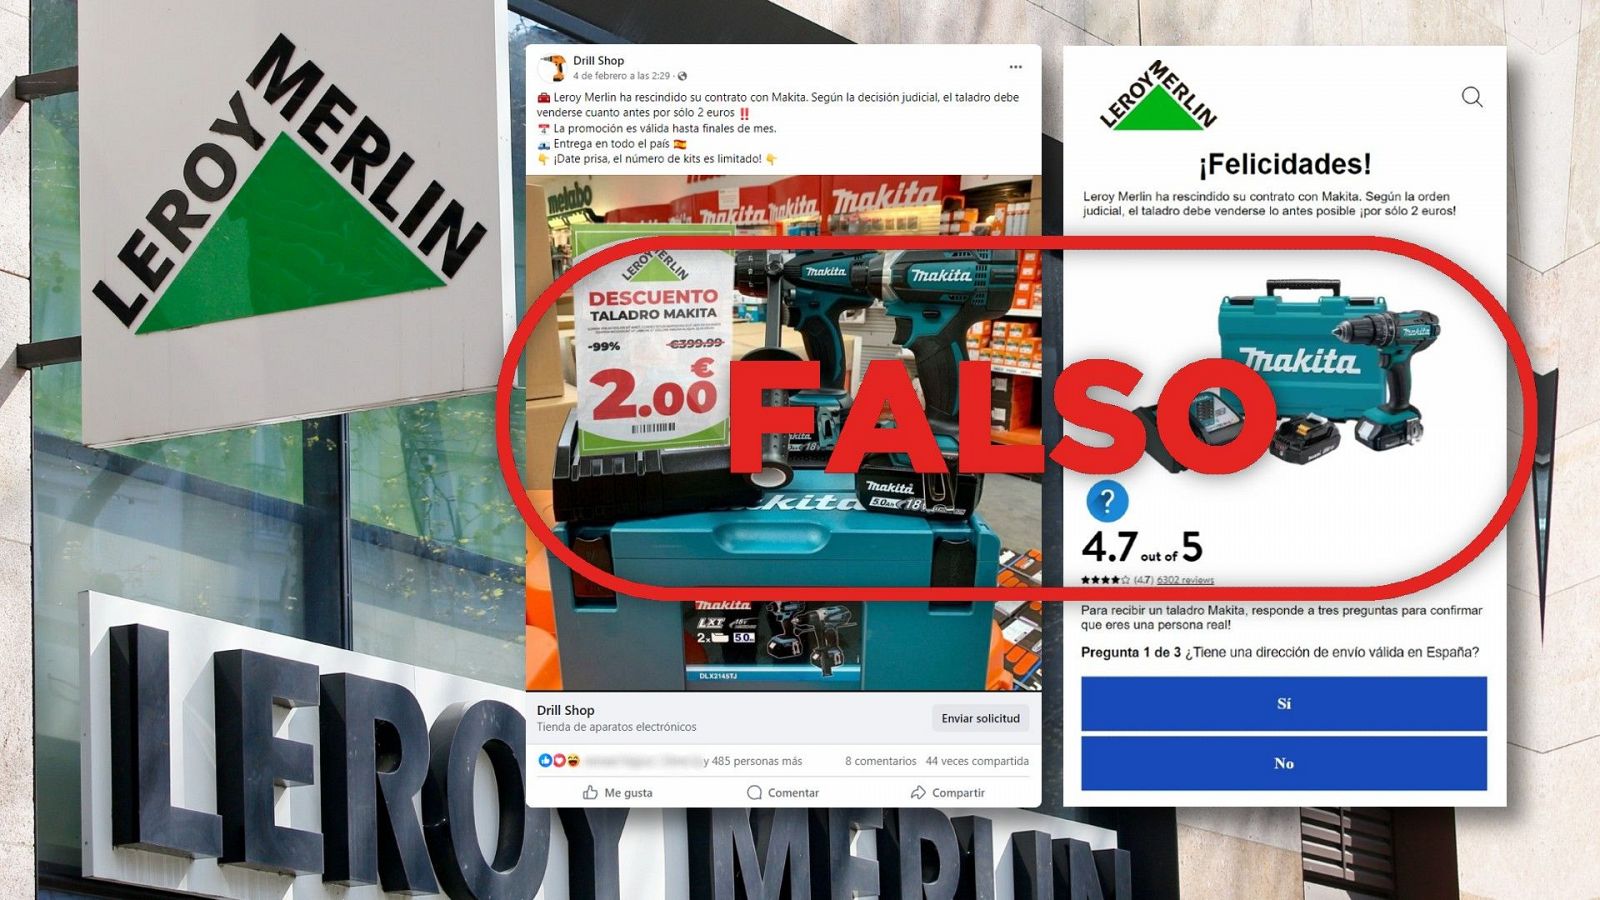 Fraude: Leroy Merlín no vende taladros por 2 euros, con el sello Falso en rojo de VerificaRTVE